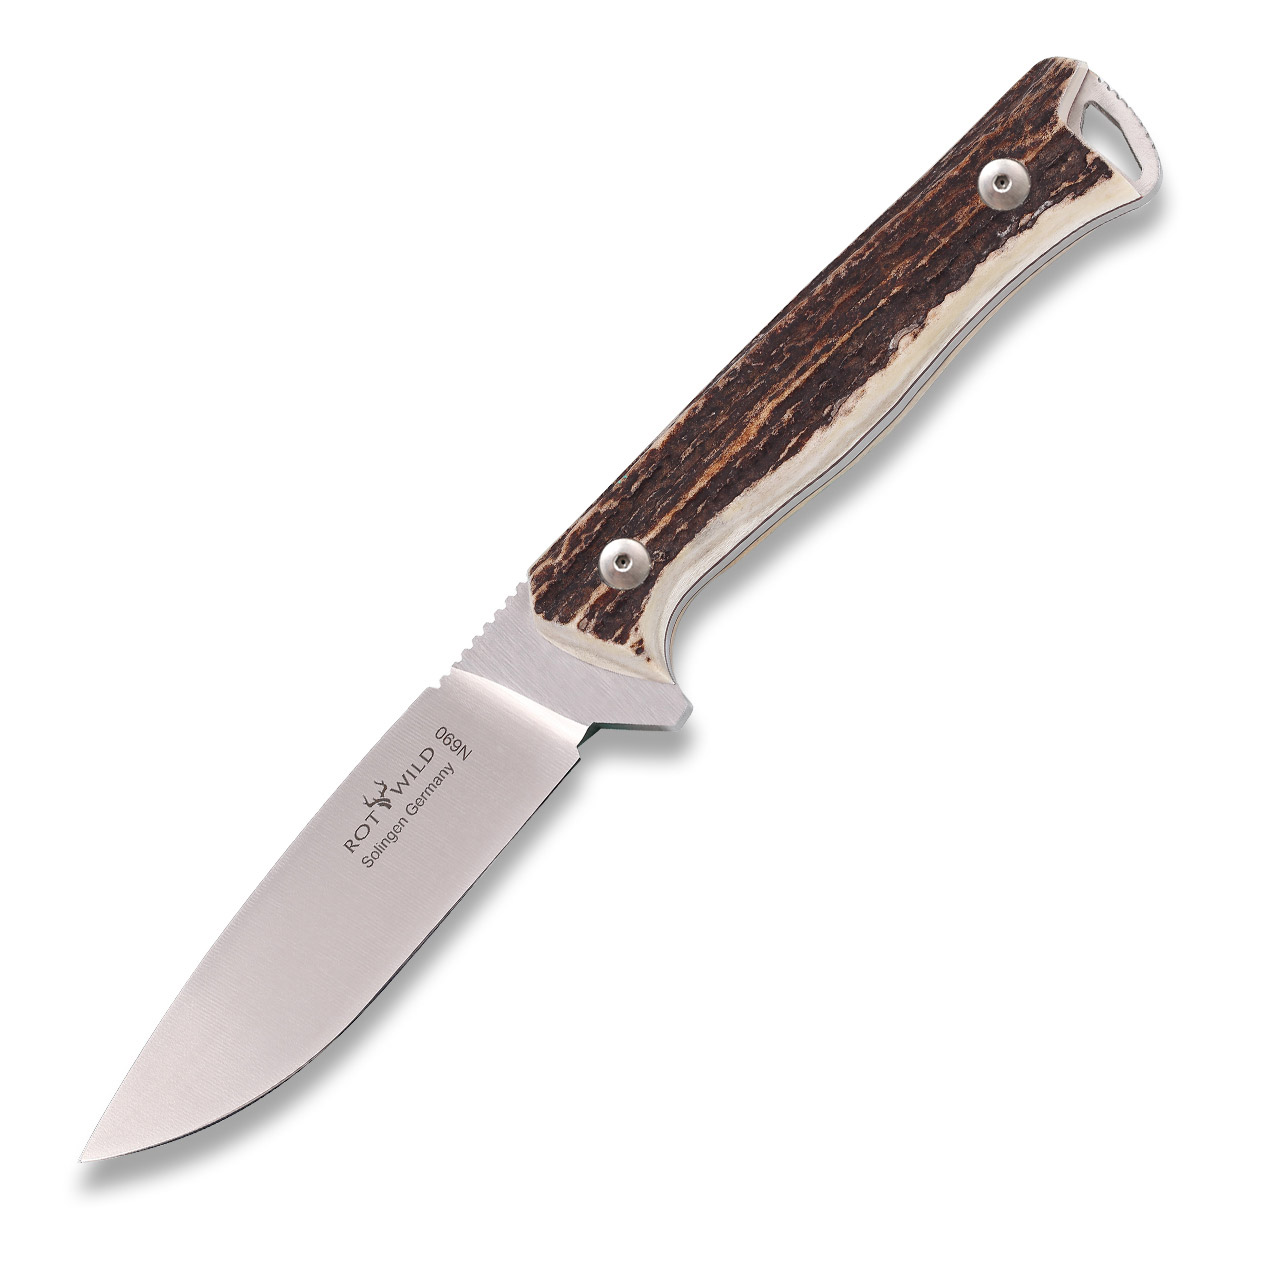 Hunting knife "Sperber" buckhorn